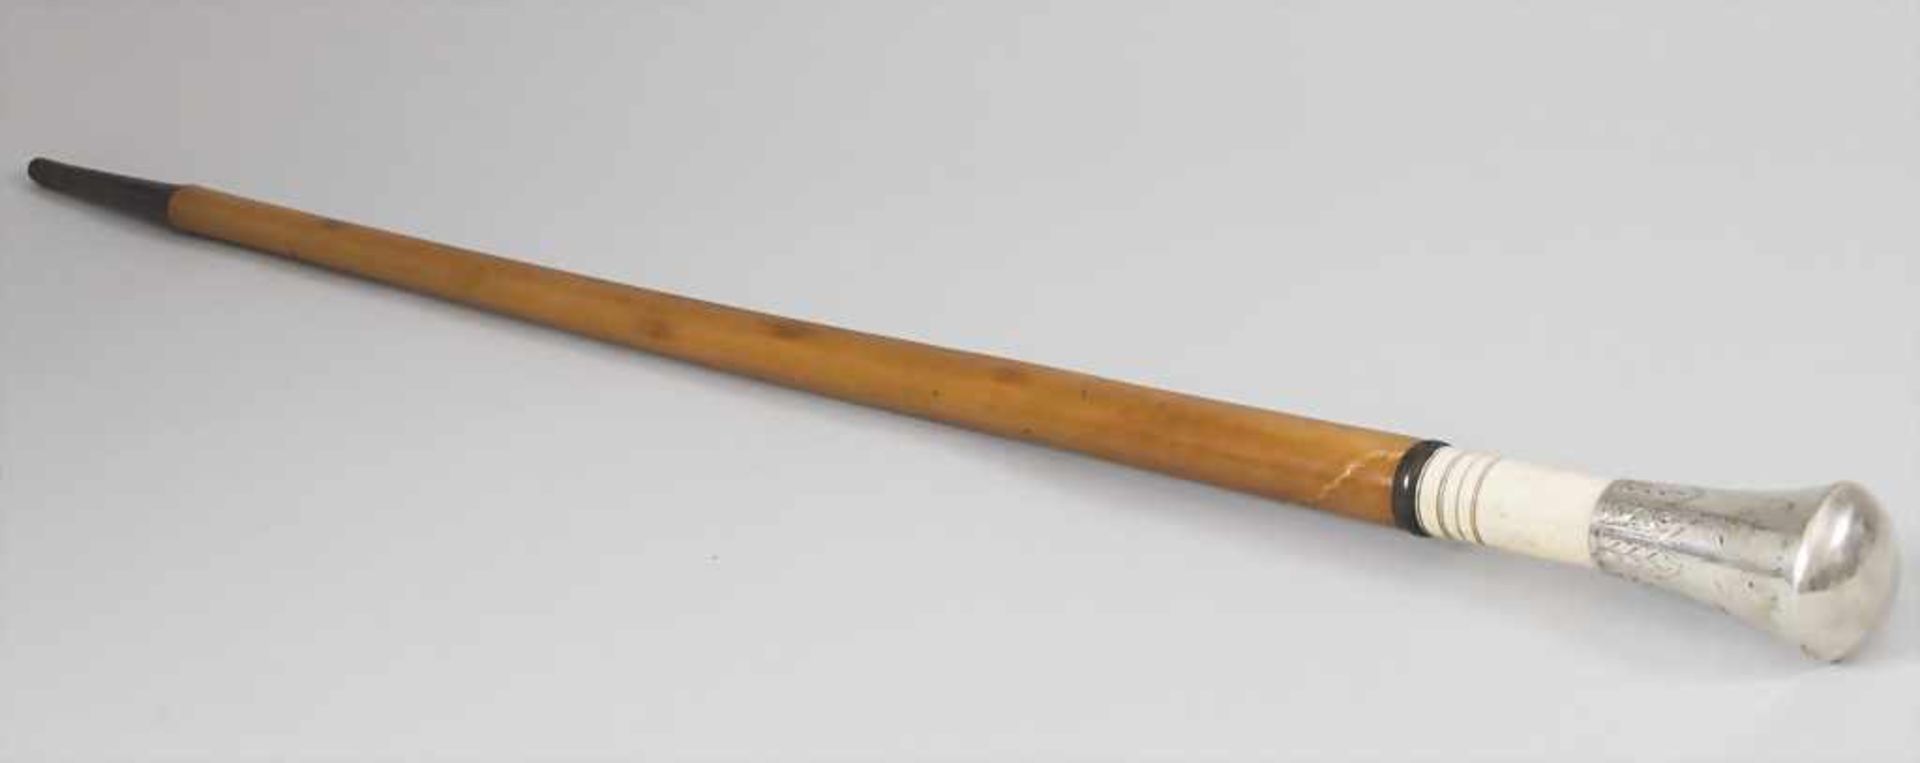 Spazierstock / A walking stick / cane, um 1900 - Bild 3 aus 3